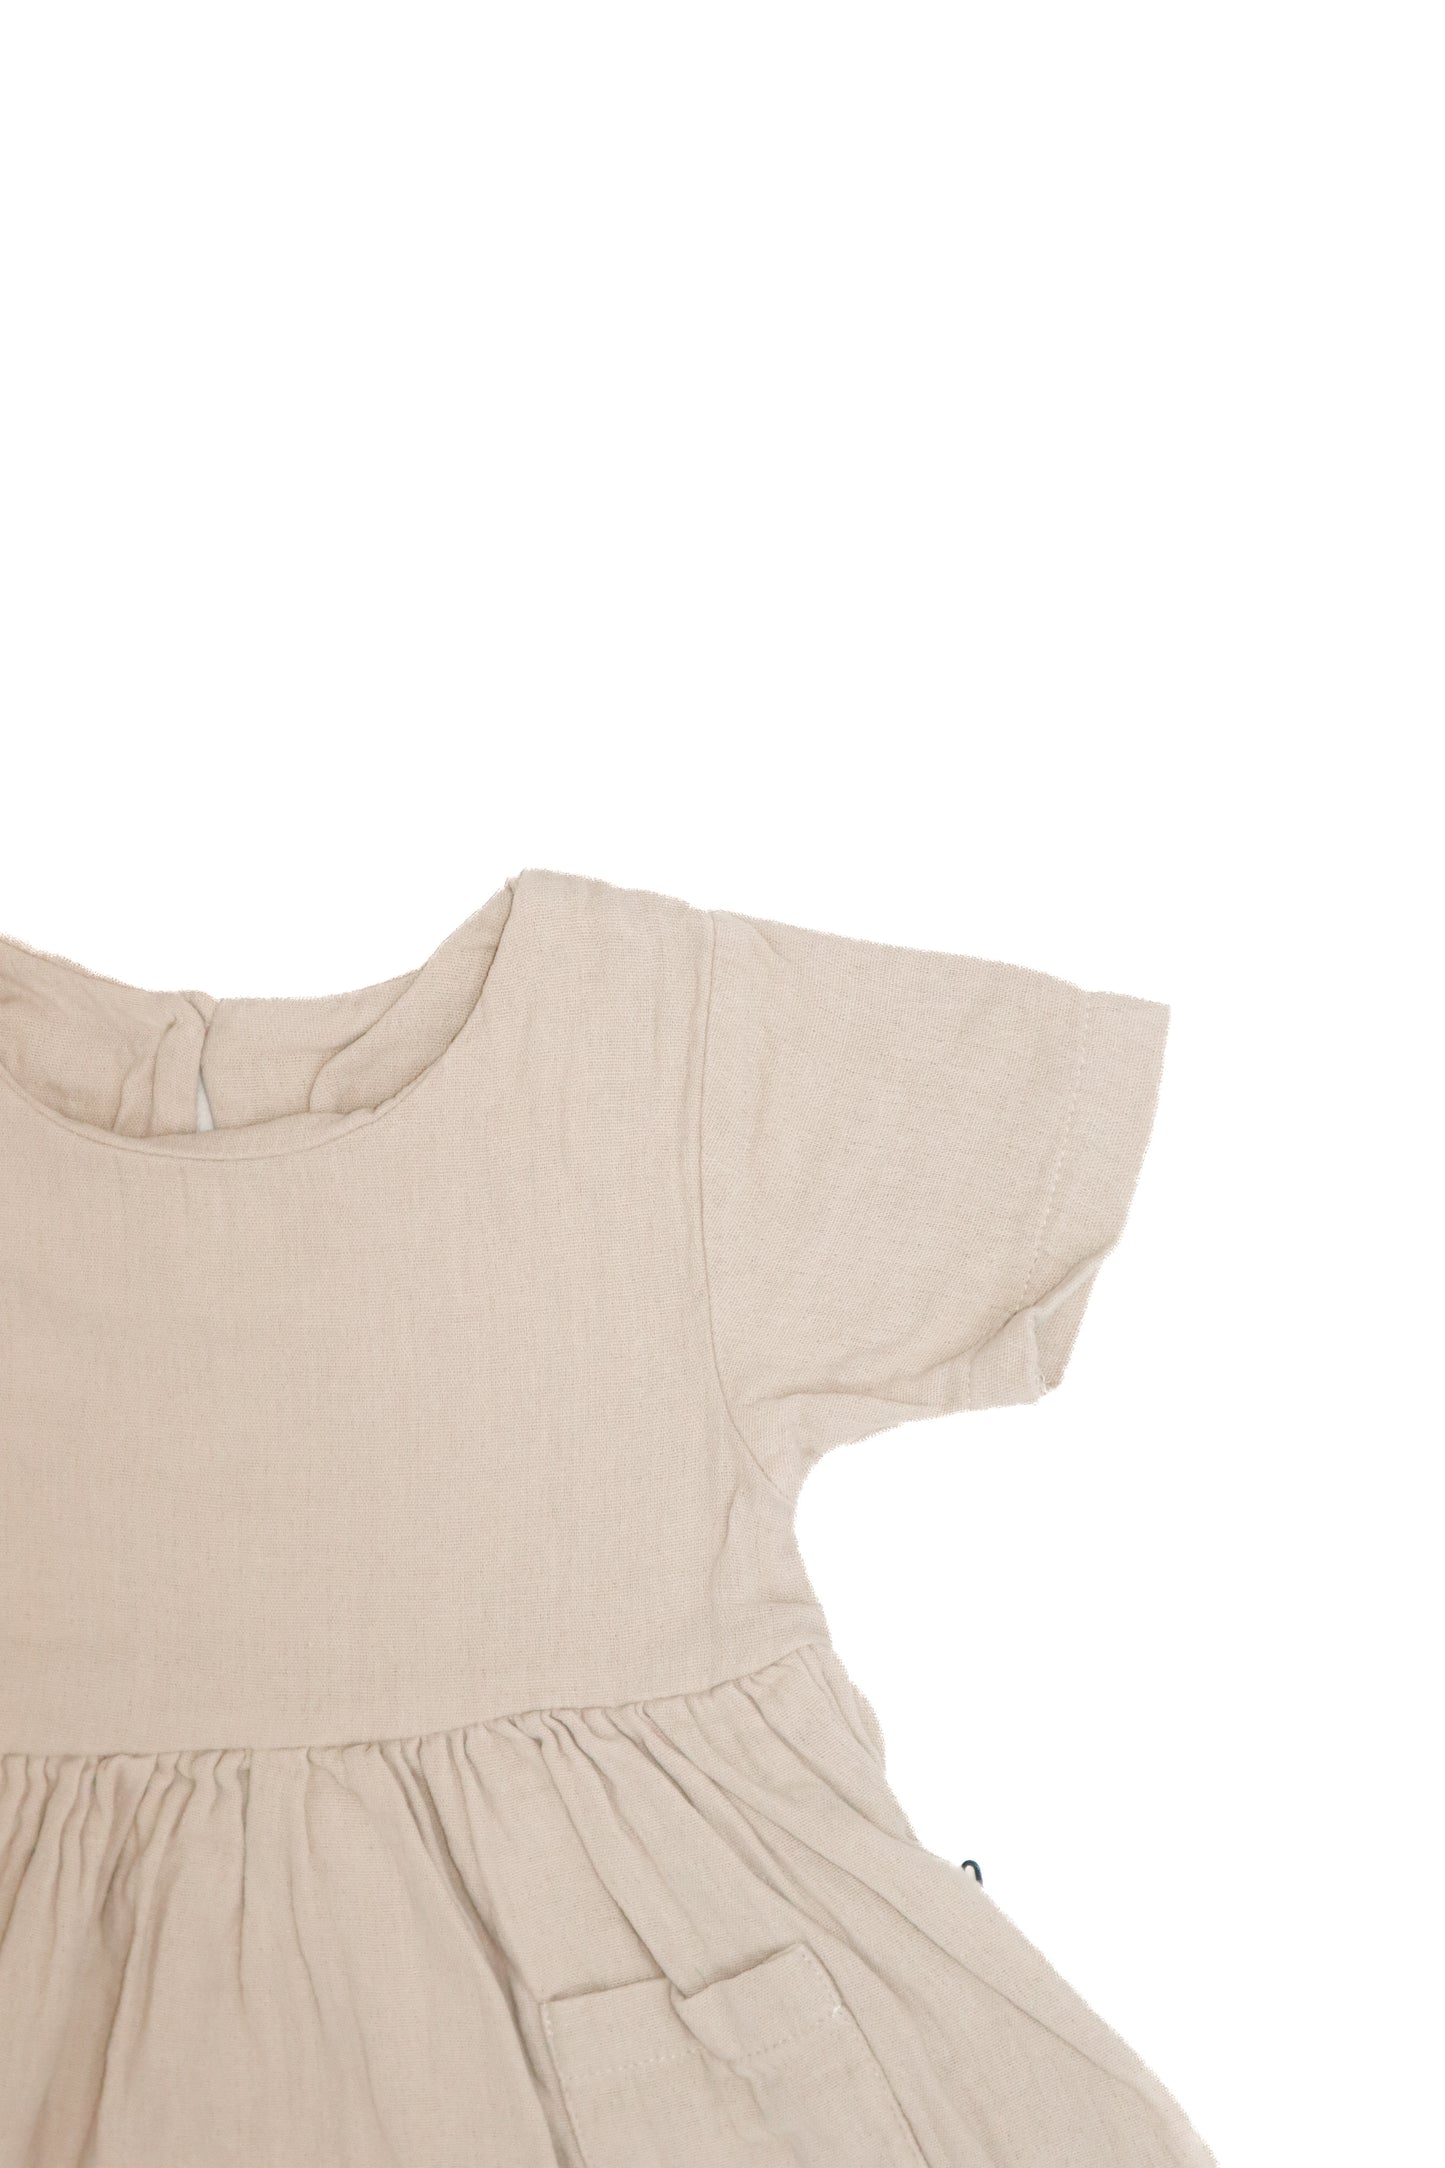 Baby 100% Muslın Double pocket Dress